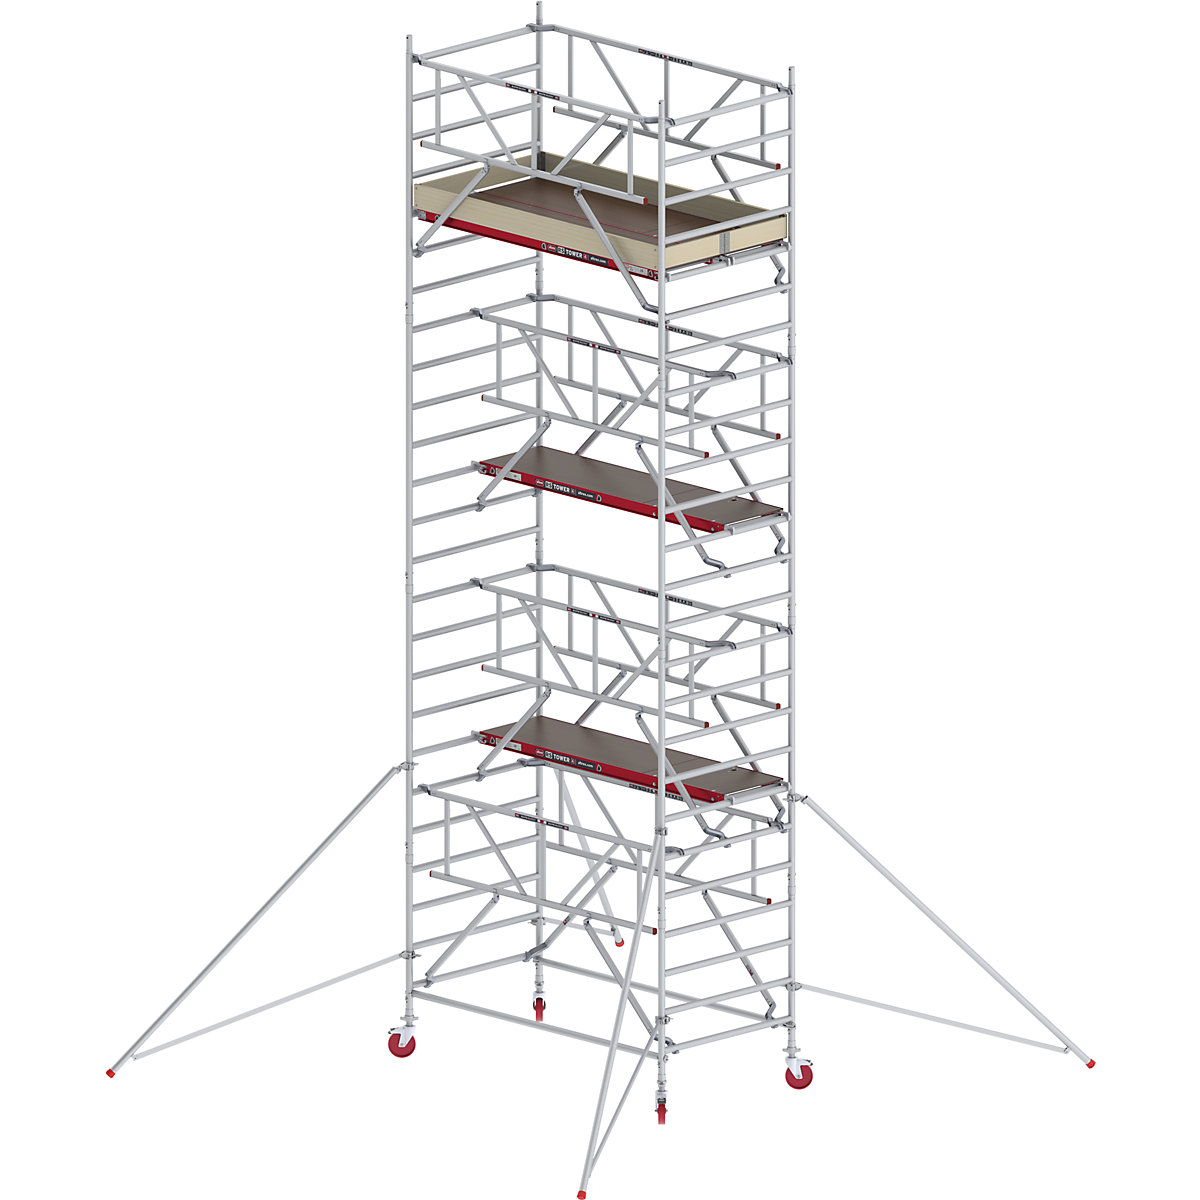 Fahrgerüst RS TOWER 42 breit mit Safe-Quick® Altrex, Holzplattform, Länge 2,45 m, Arbeitshöhe 8,20 m